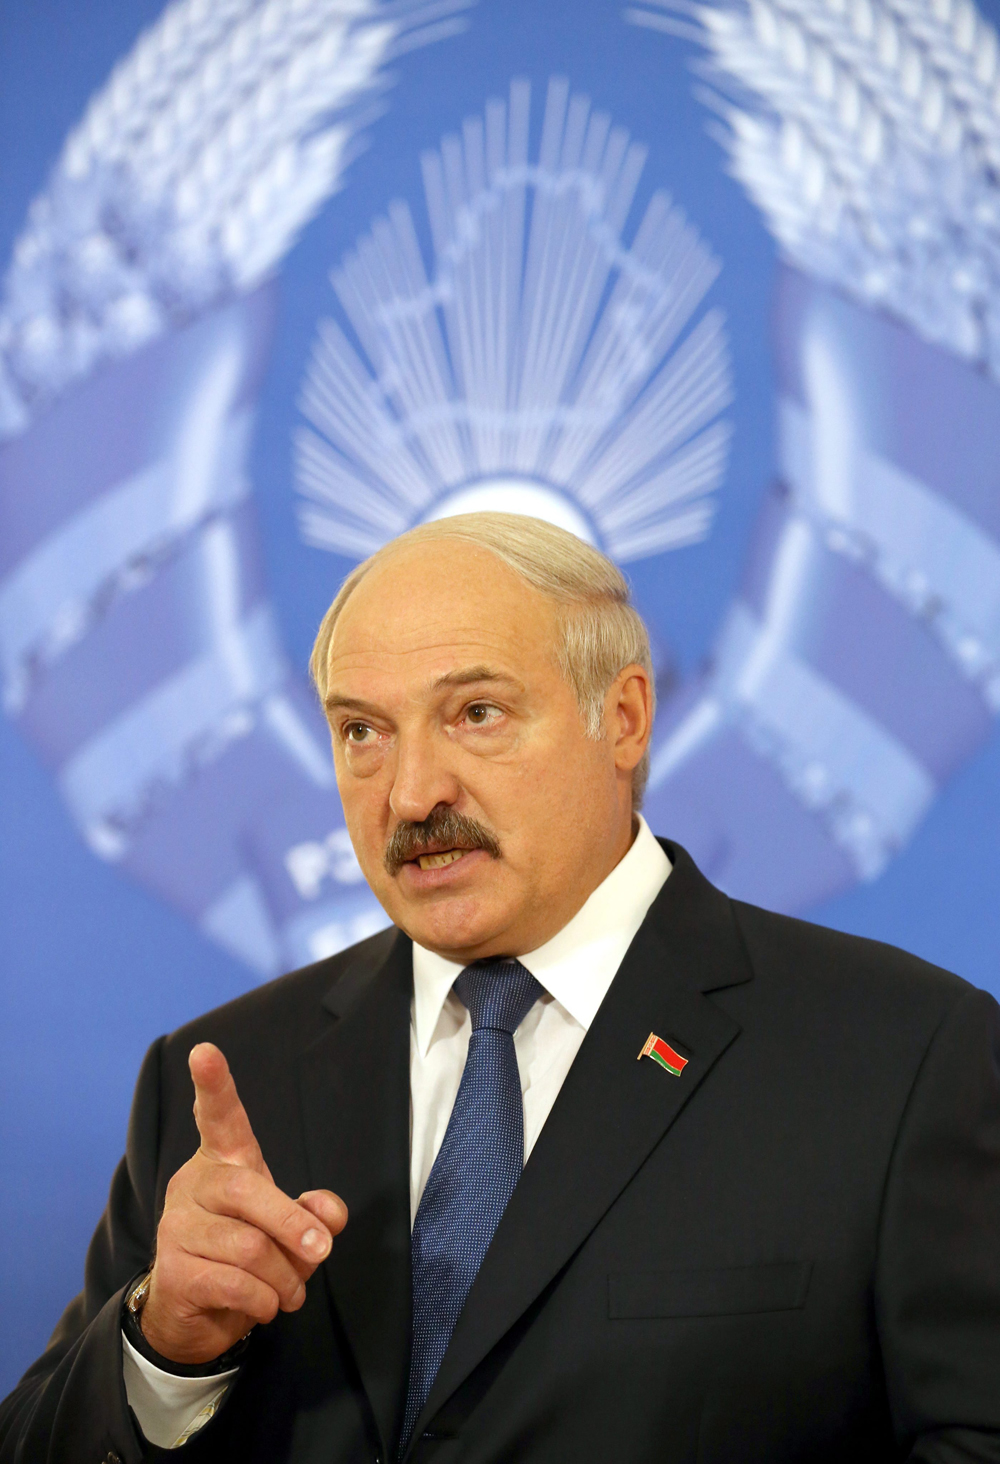 Elnökválasztás Fehéroroszországban